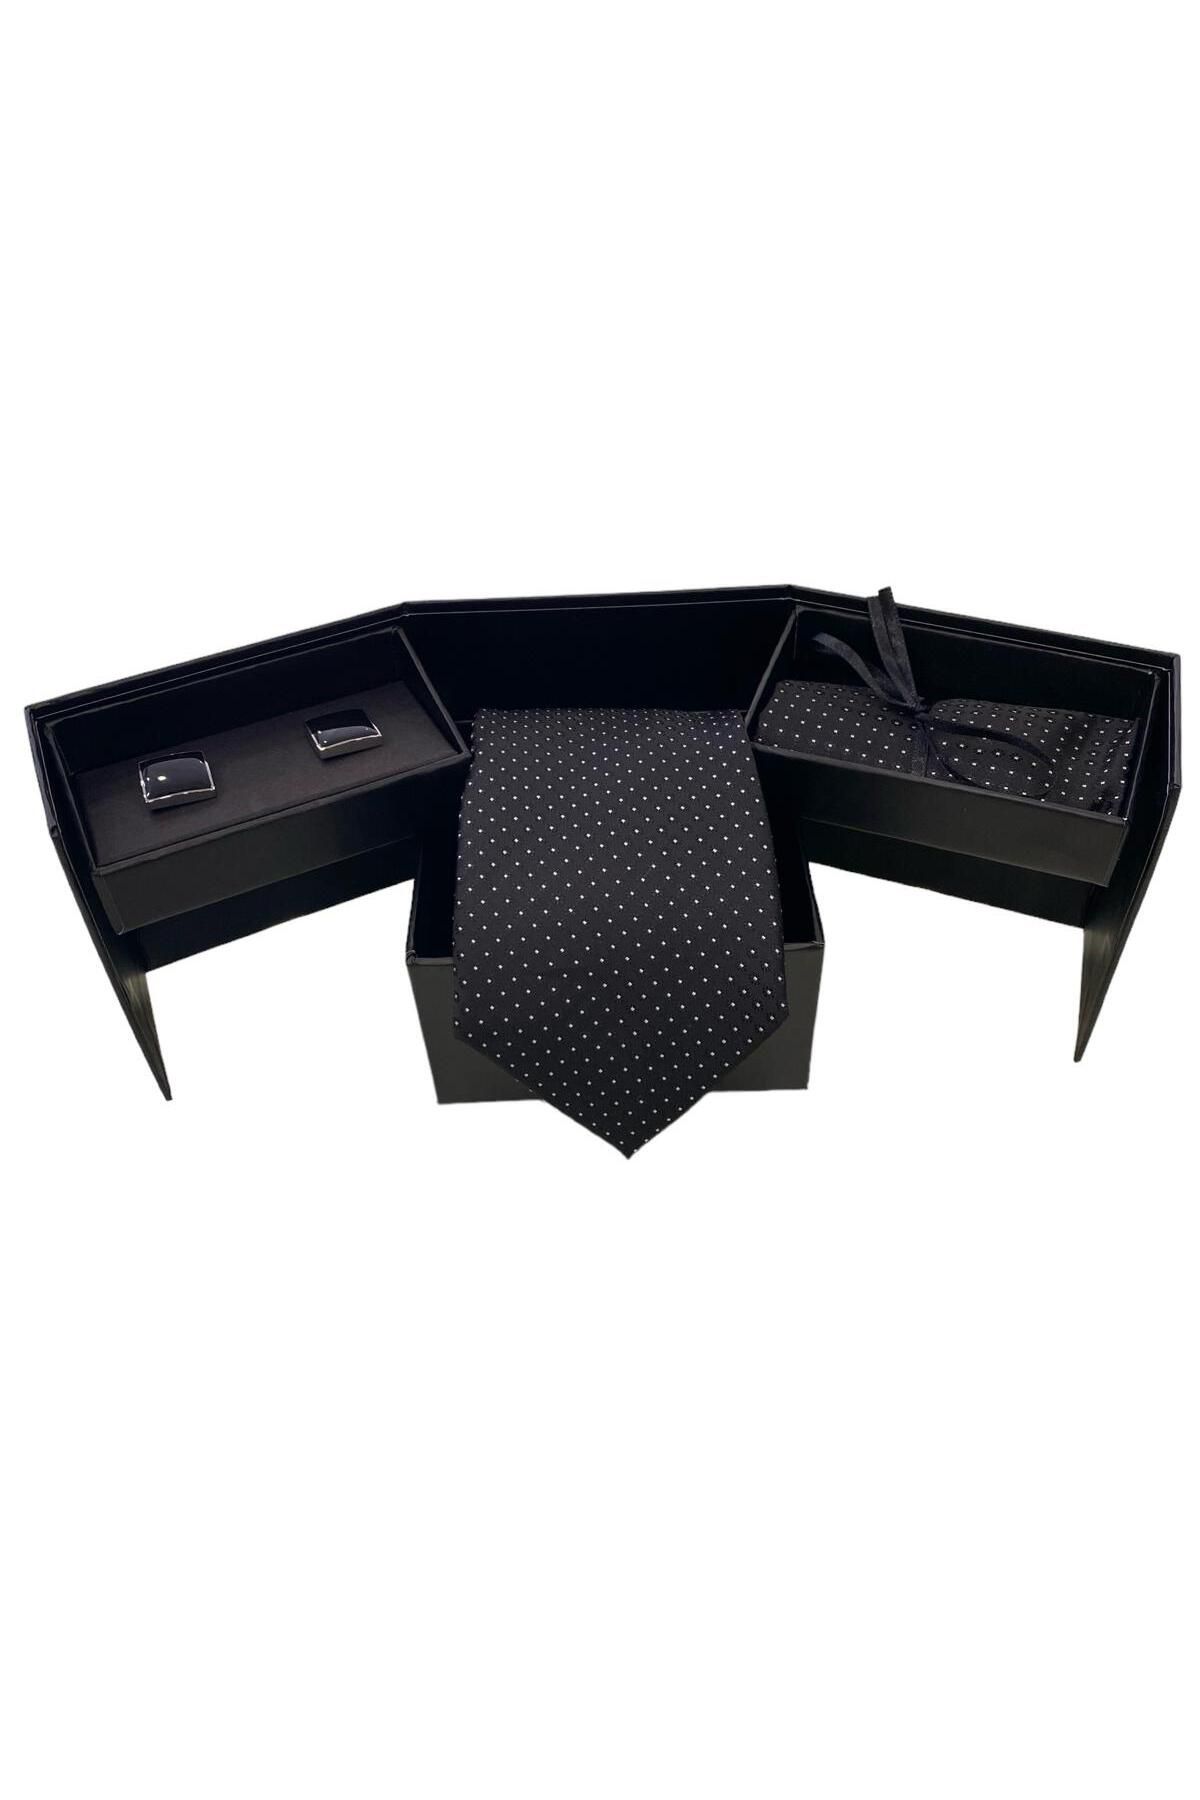 Sarar Mikro Desen Siyah Kravat Mendil Kol Düğmesi Set